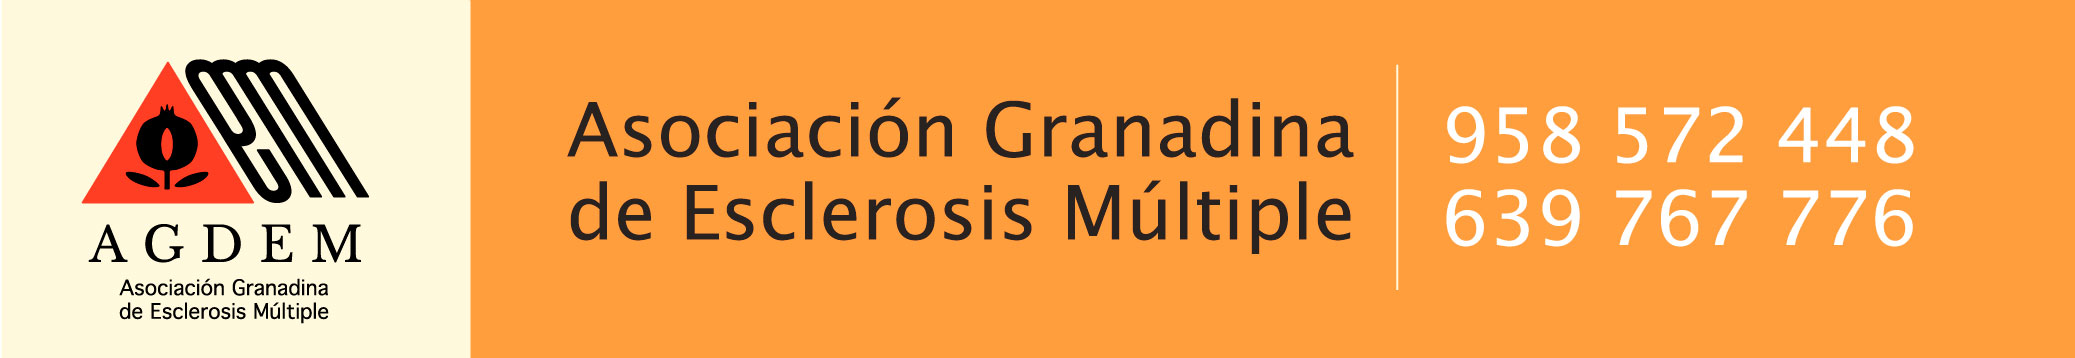 Asociación Granadina de Esclerosis Múltiple